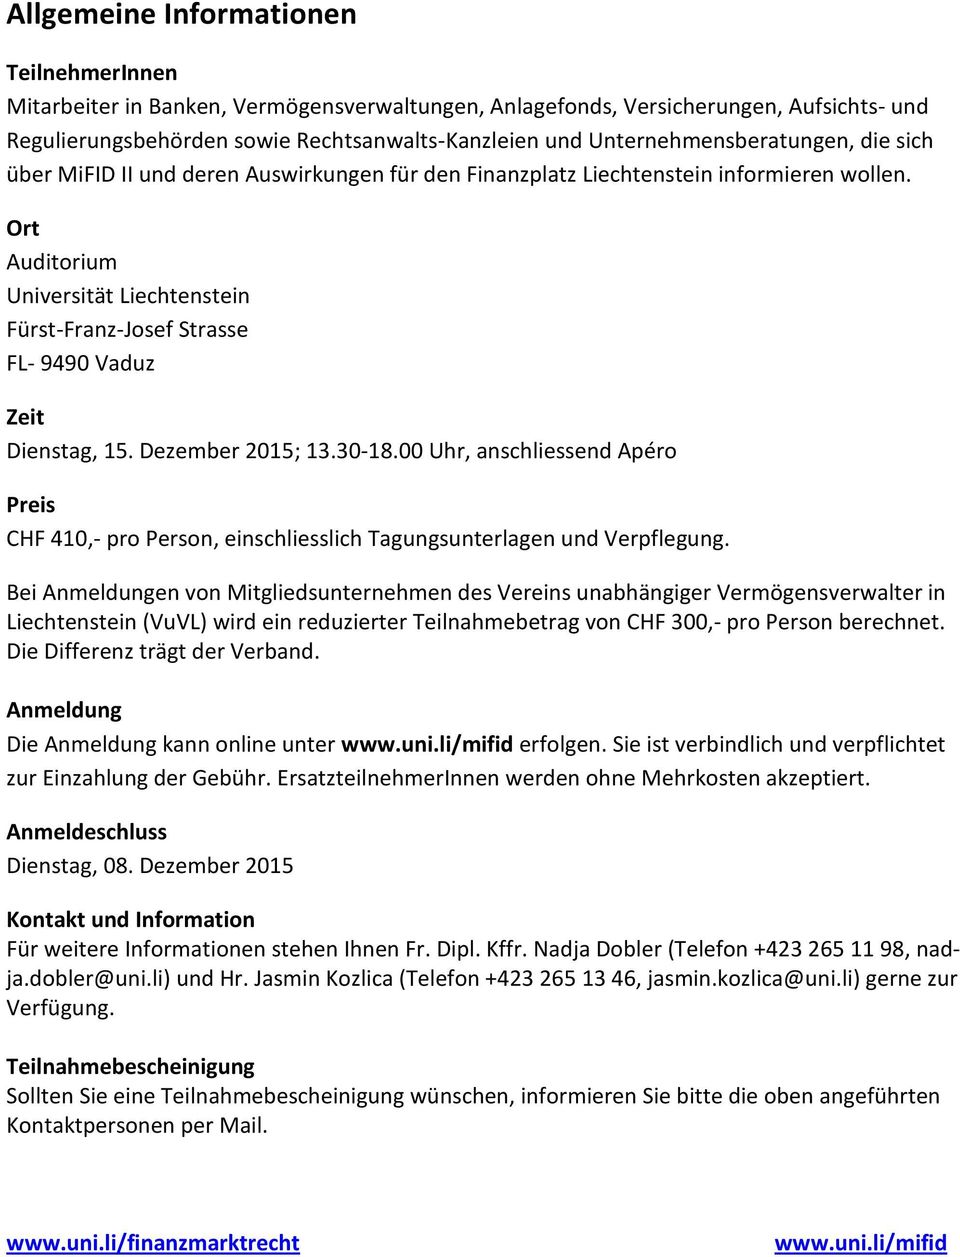 Ort Auditorium Universität Liechtenstein Fürst-Franz-Josef Strasse FL- 9490 Vaduz Zeit Dienstag, 15. Dezember 2015; 13.30-18.